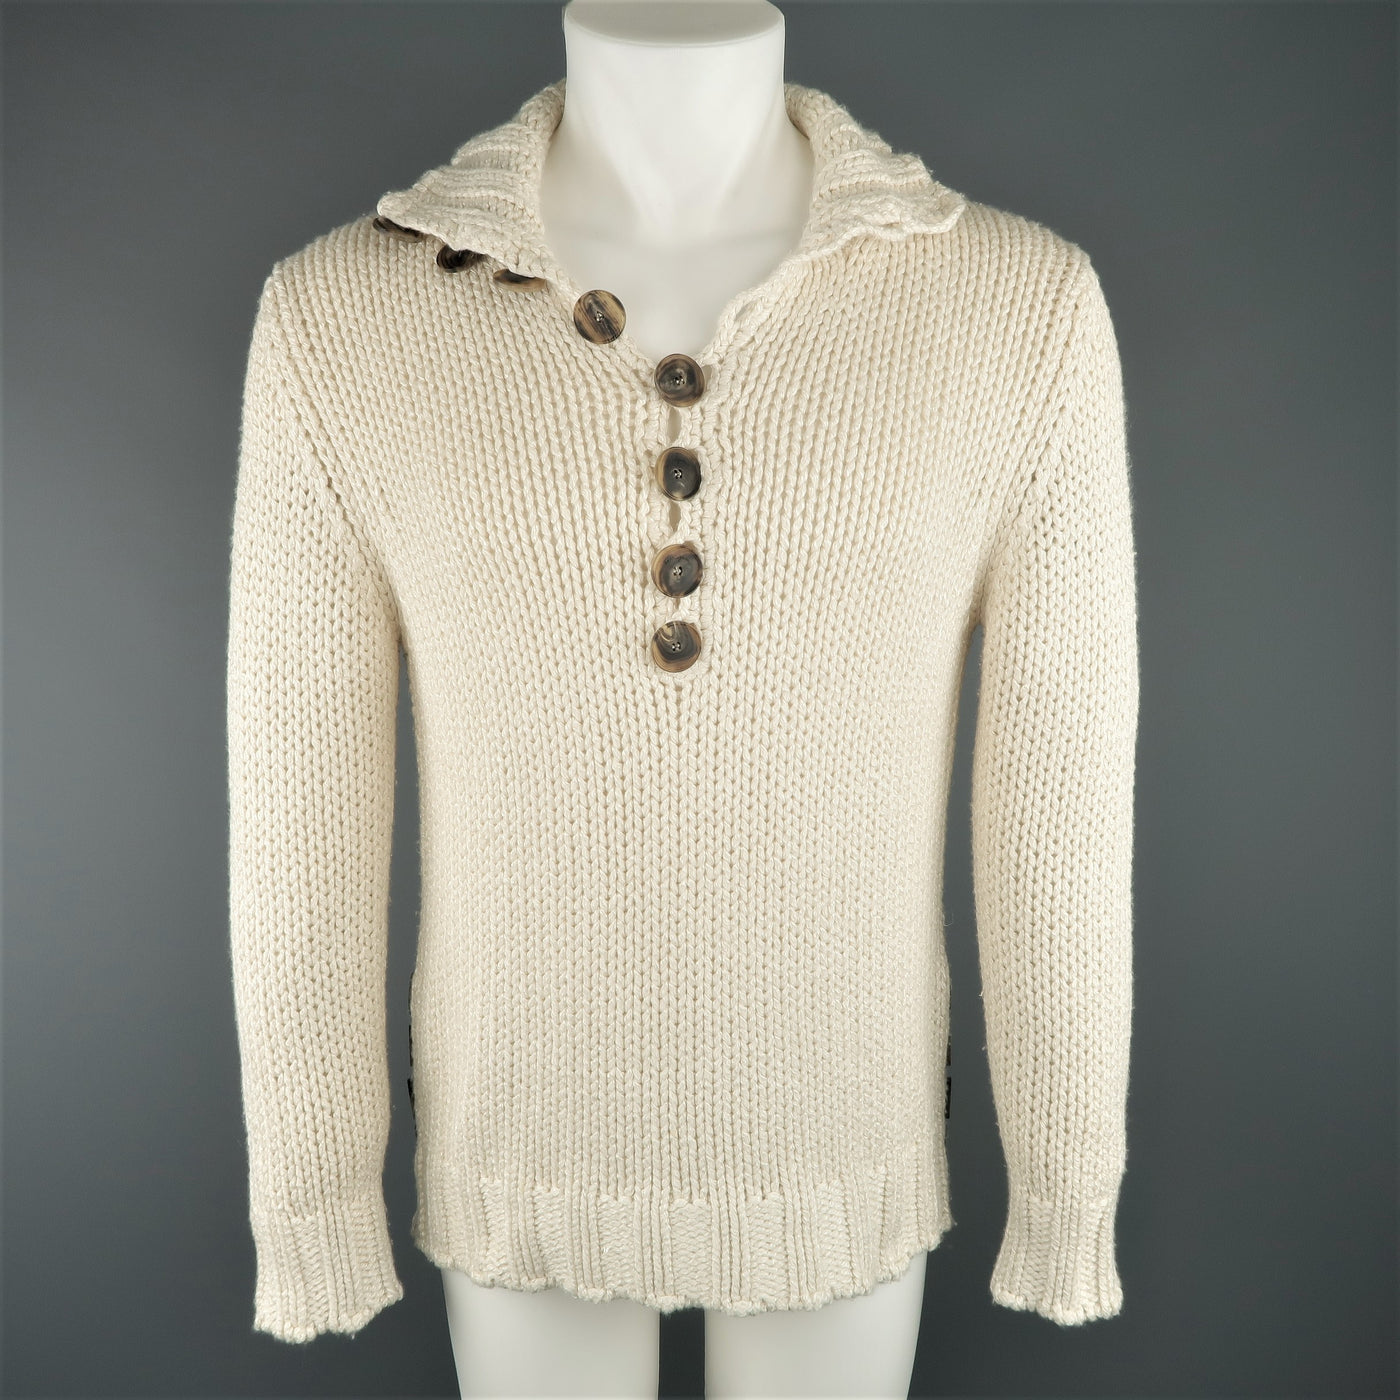 SALVATORE FERRAGAMO Size S Beige Knitted Silk / Cashmere Half Button Sweater